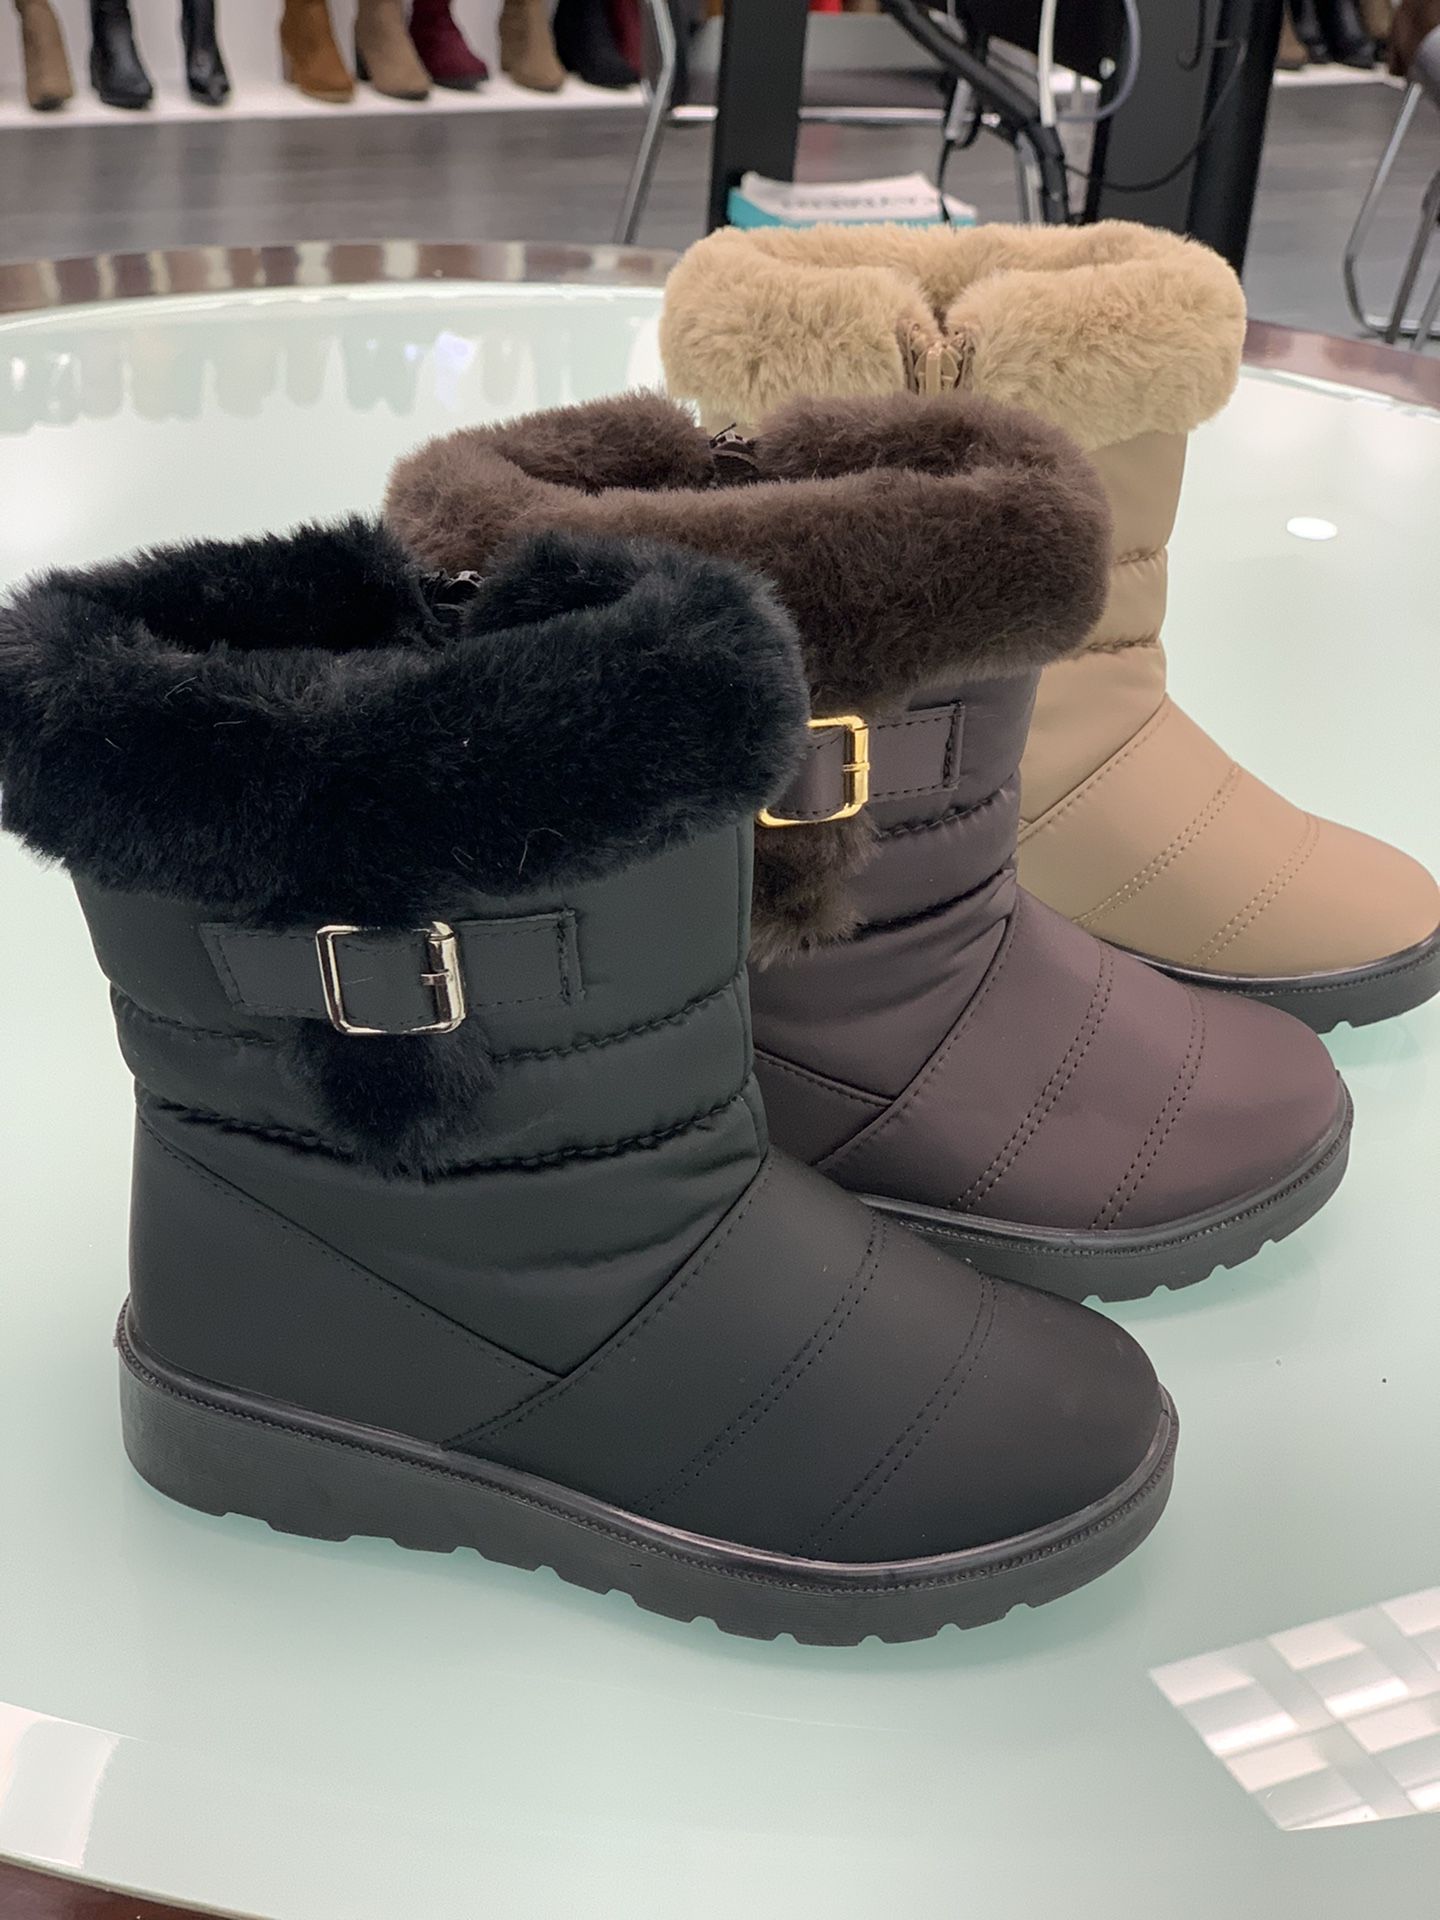 Warm Winter Snow Boots Girls Kids Sizes 9,10,11,12,13,1,2,3,4